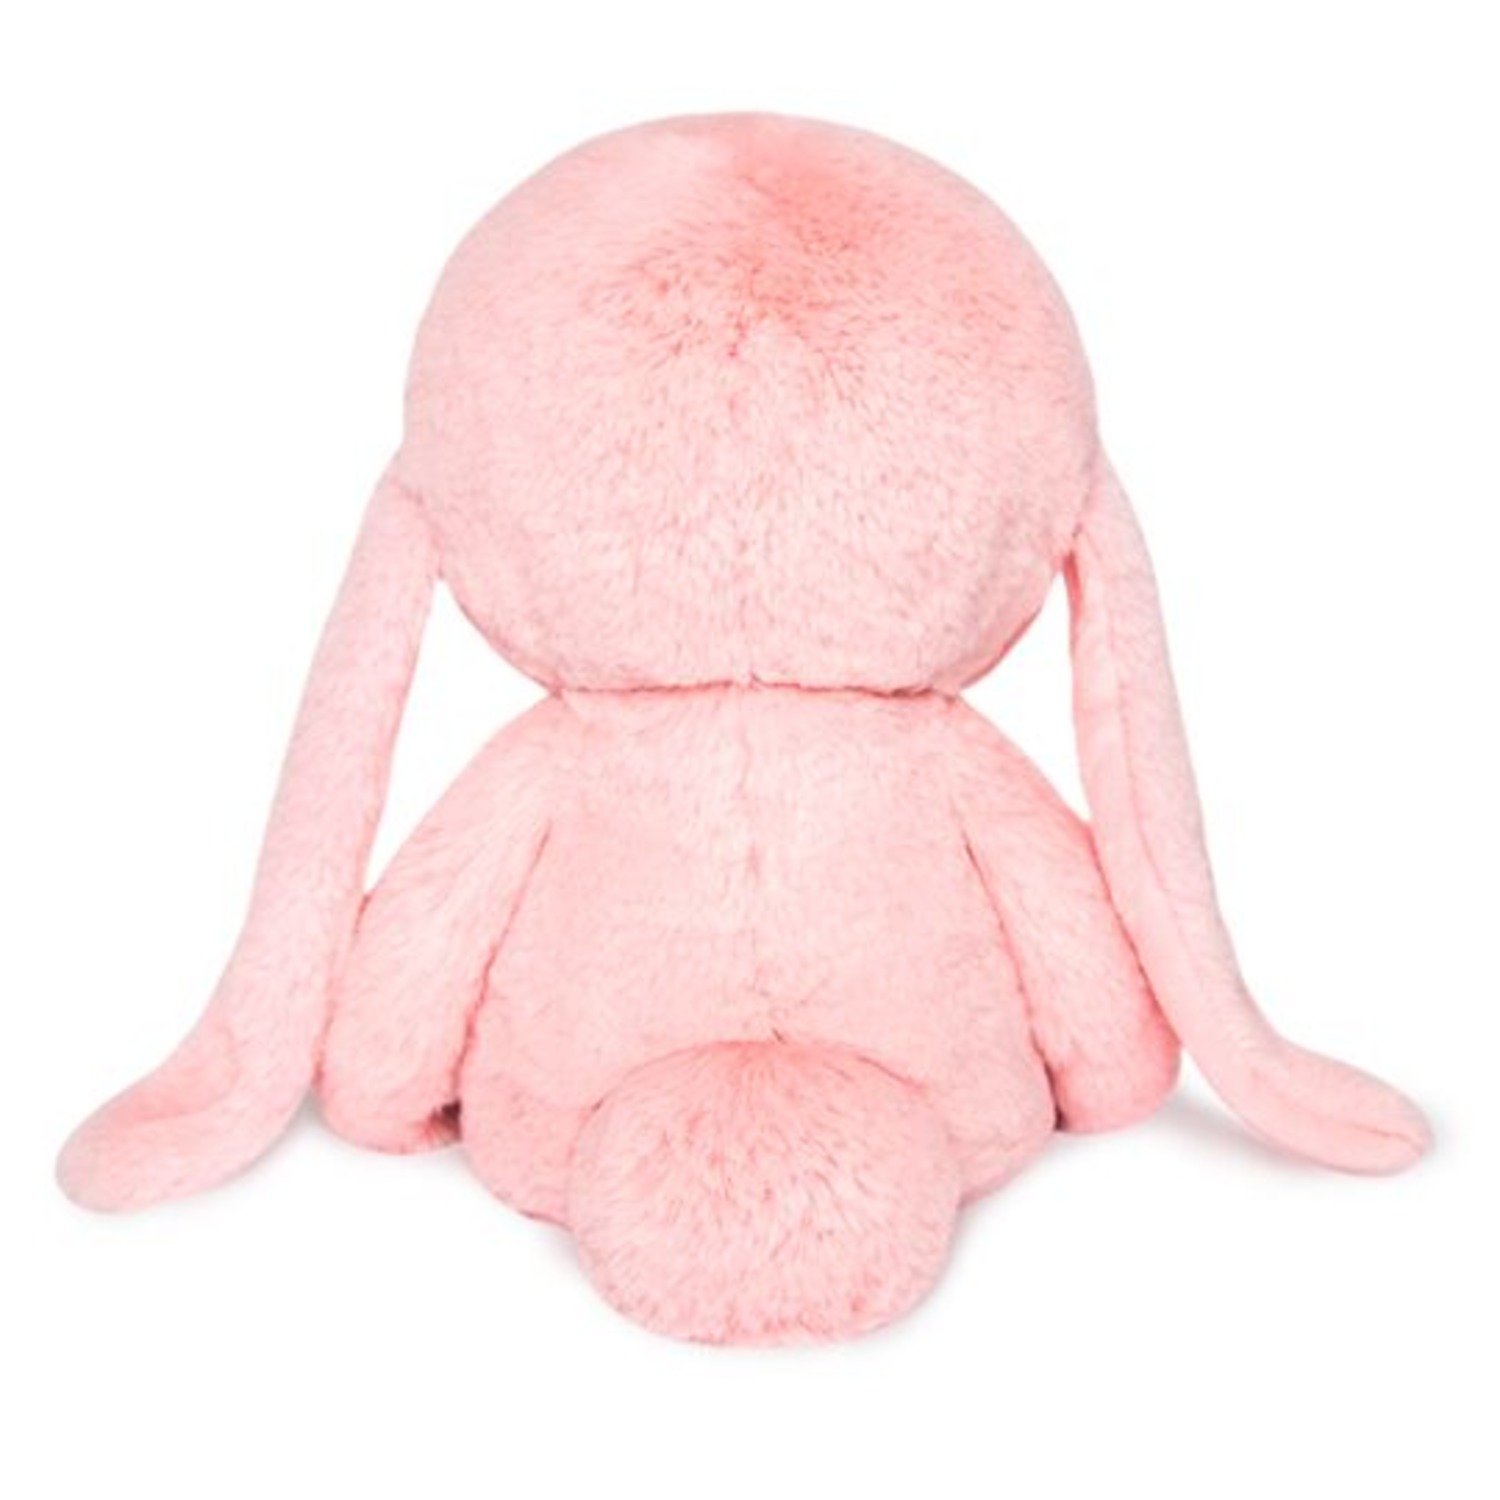 Мягкая игрушка "Лори Колори Её розовый", 30 см., BUDI BASA LR30-01